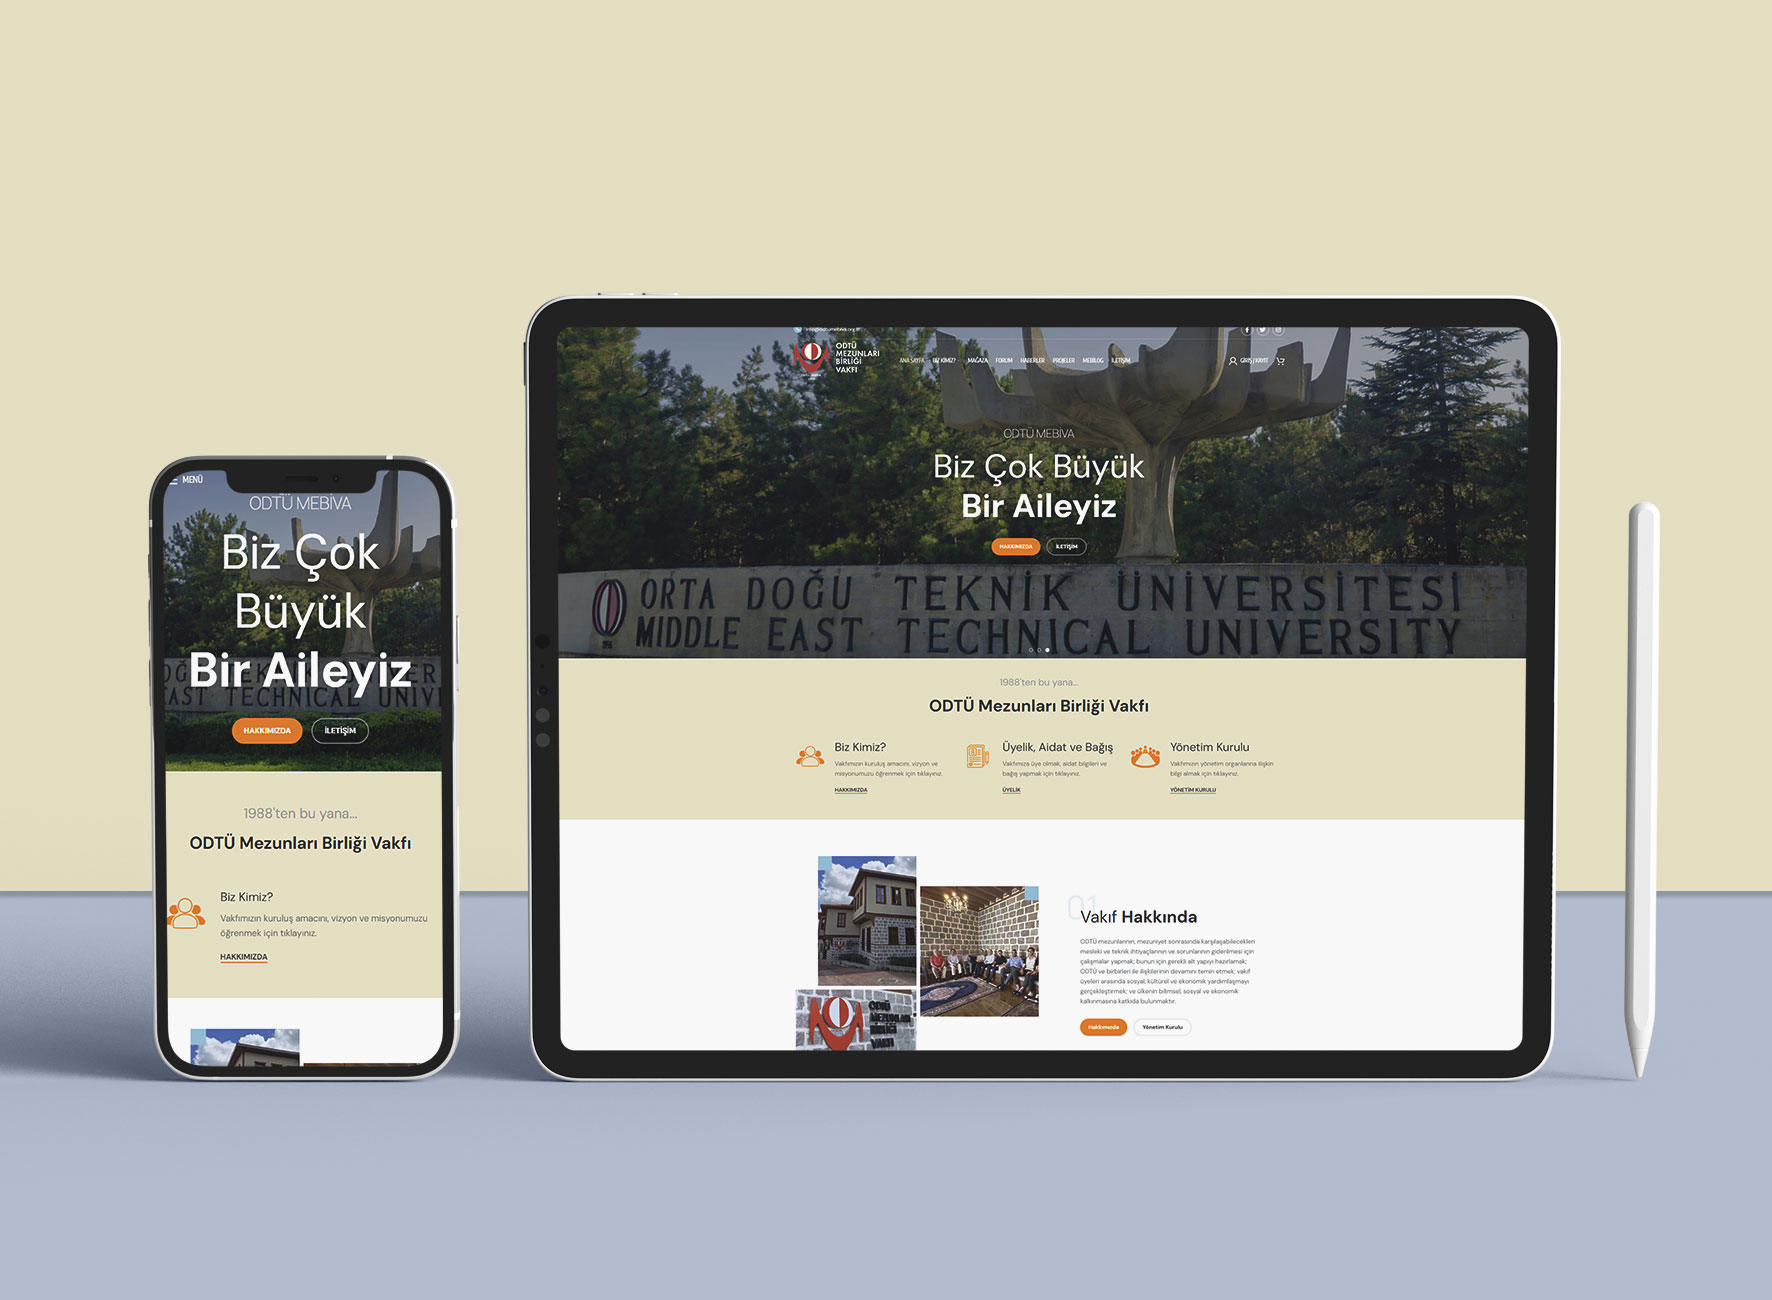 ODTÜ MEBİVA Web Sitesi Tasarımı